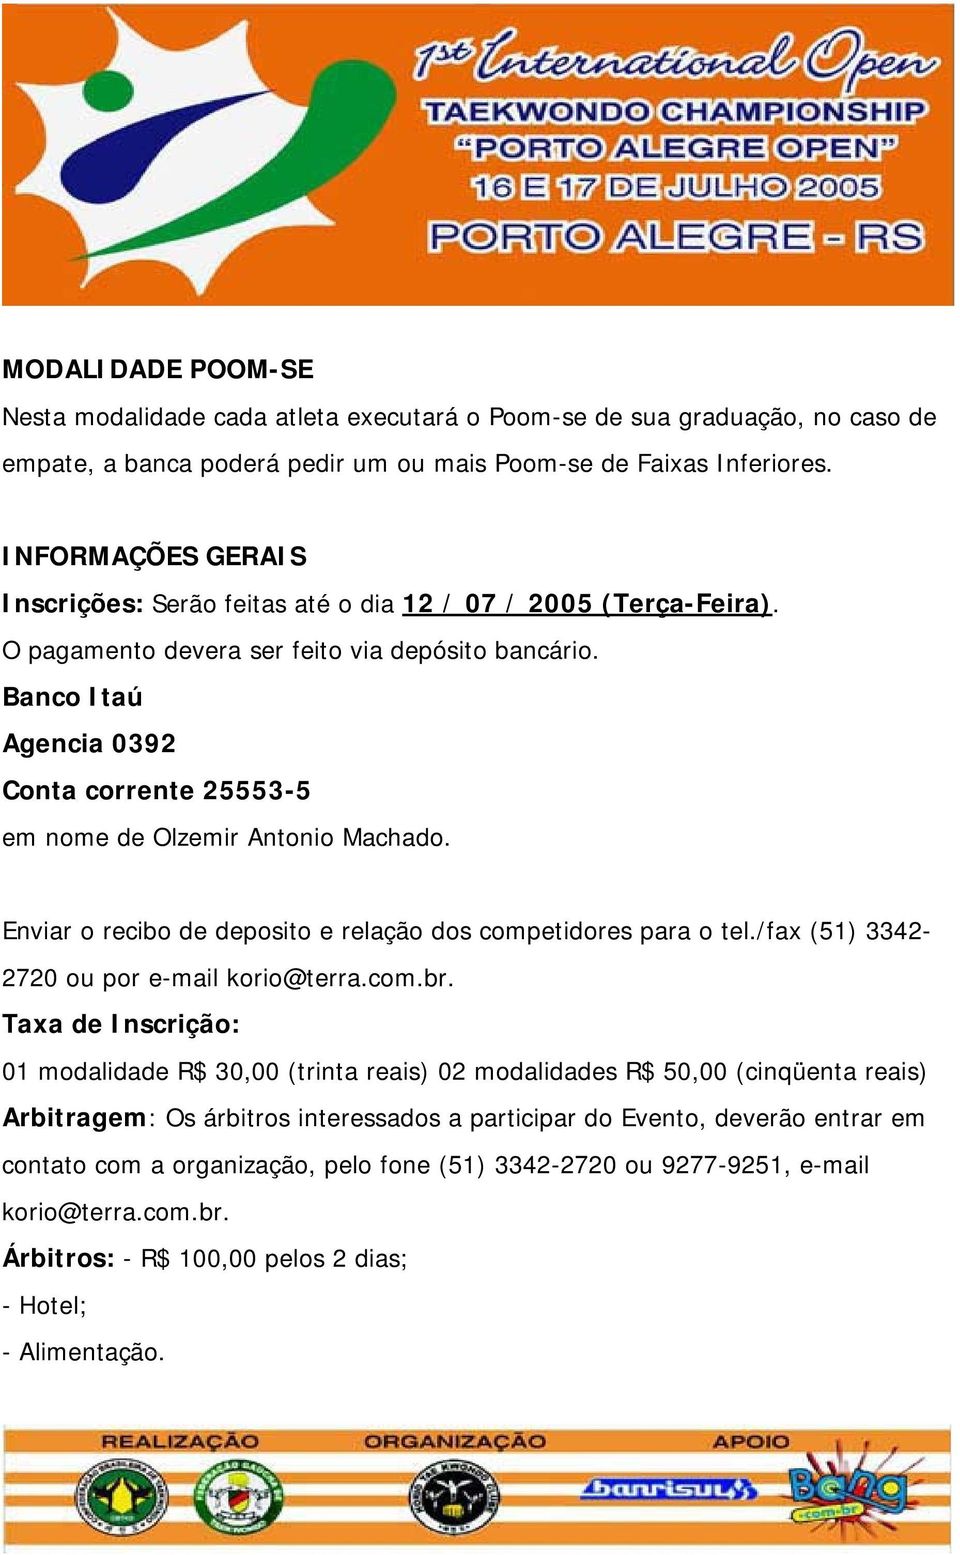 Banco Itaú Agencia 0392 Conta corrente 25553-5 em nome de Olzemir Antonio Machado. Enviar o recibo de deposito e relação dos competidores para o tel./fax (51) 3342-2720 ou por e-mail korio@terra.com.br.